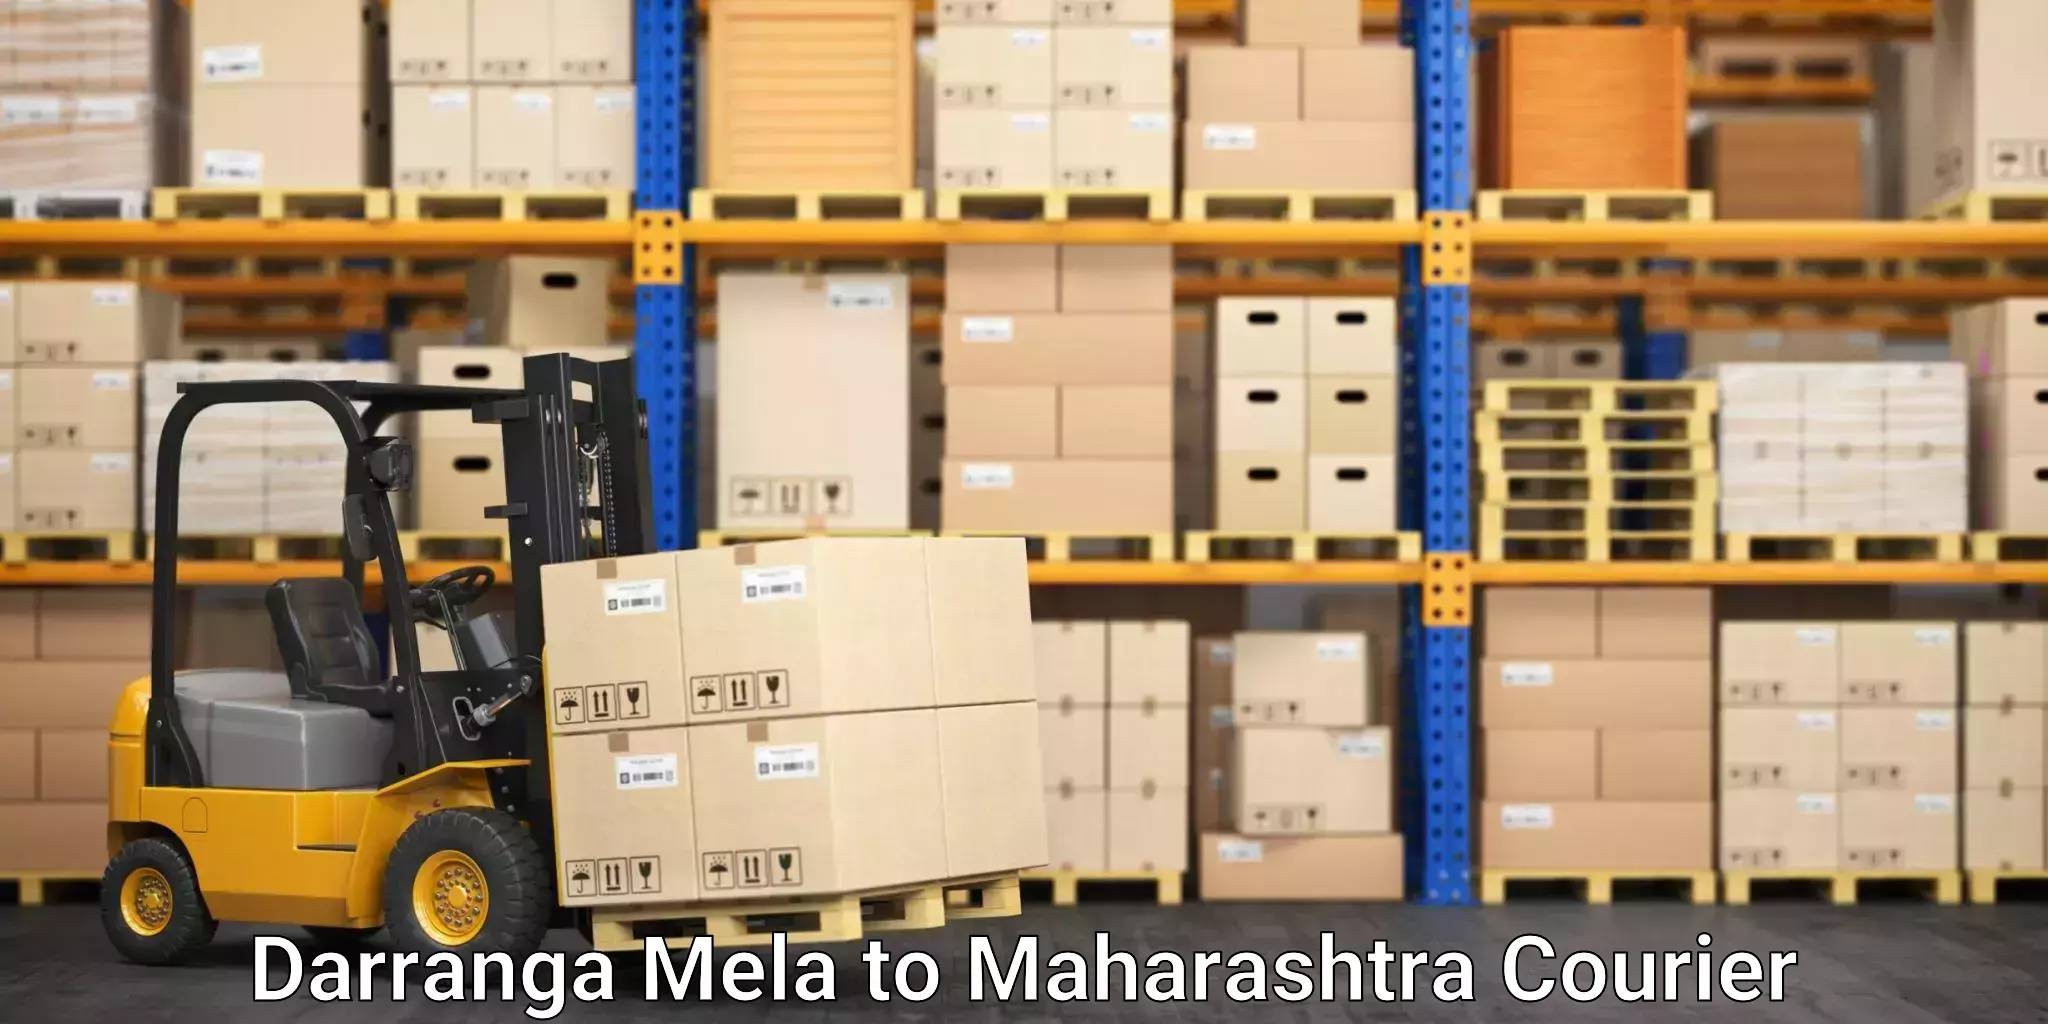 Reliable shipping solutions Darranga Mela to Kinwat